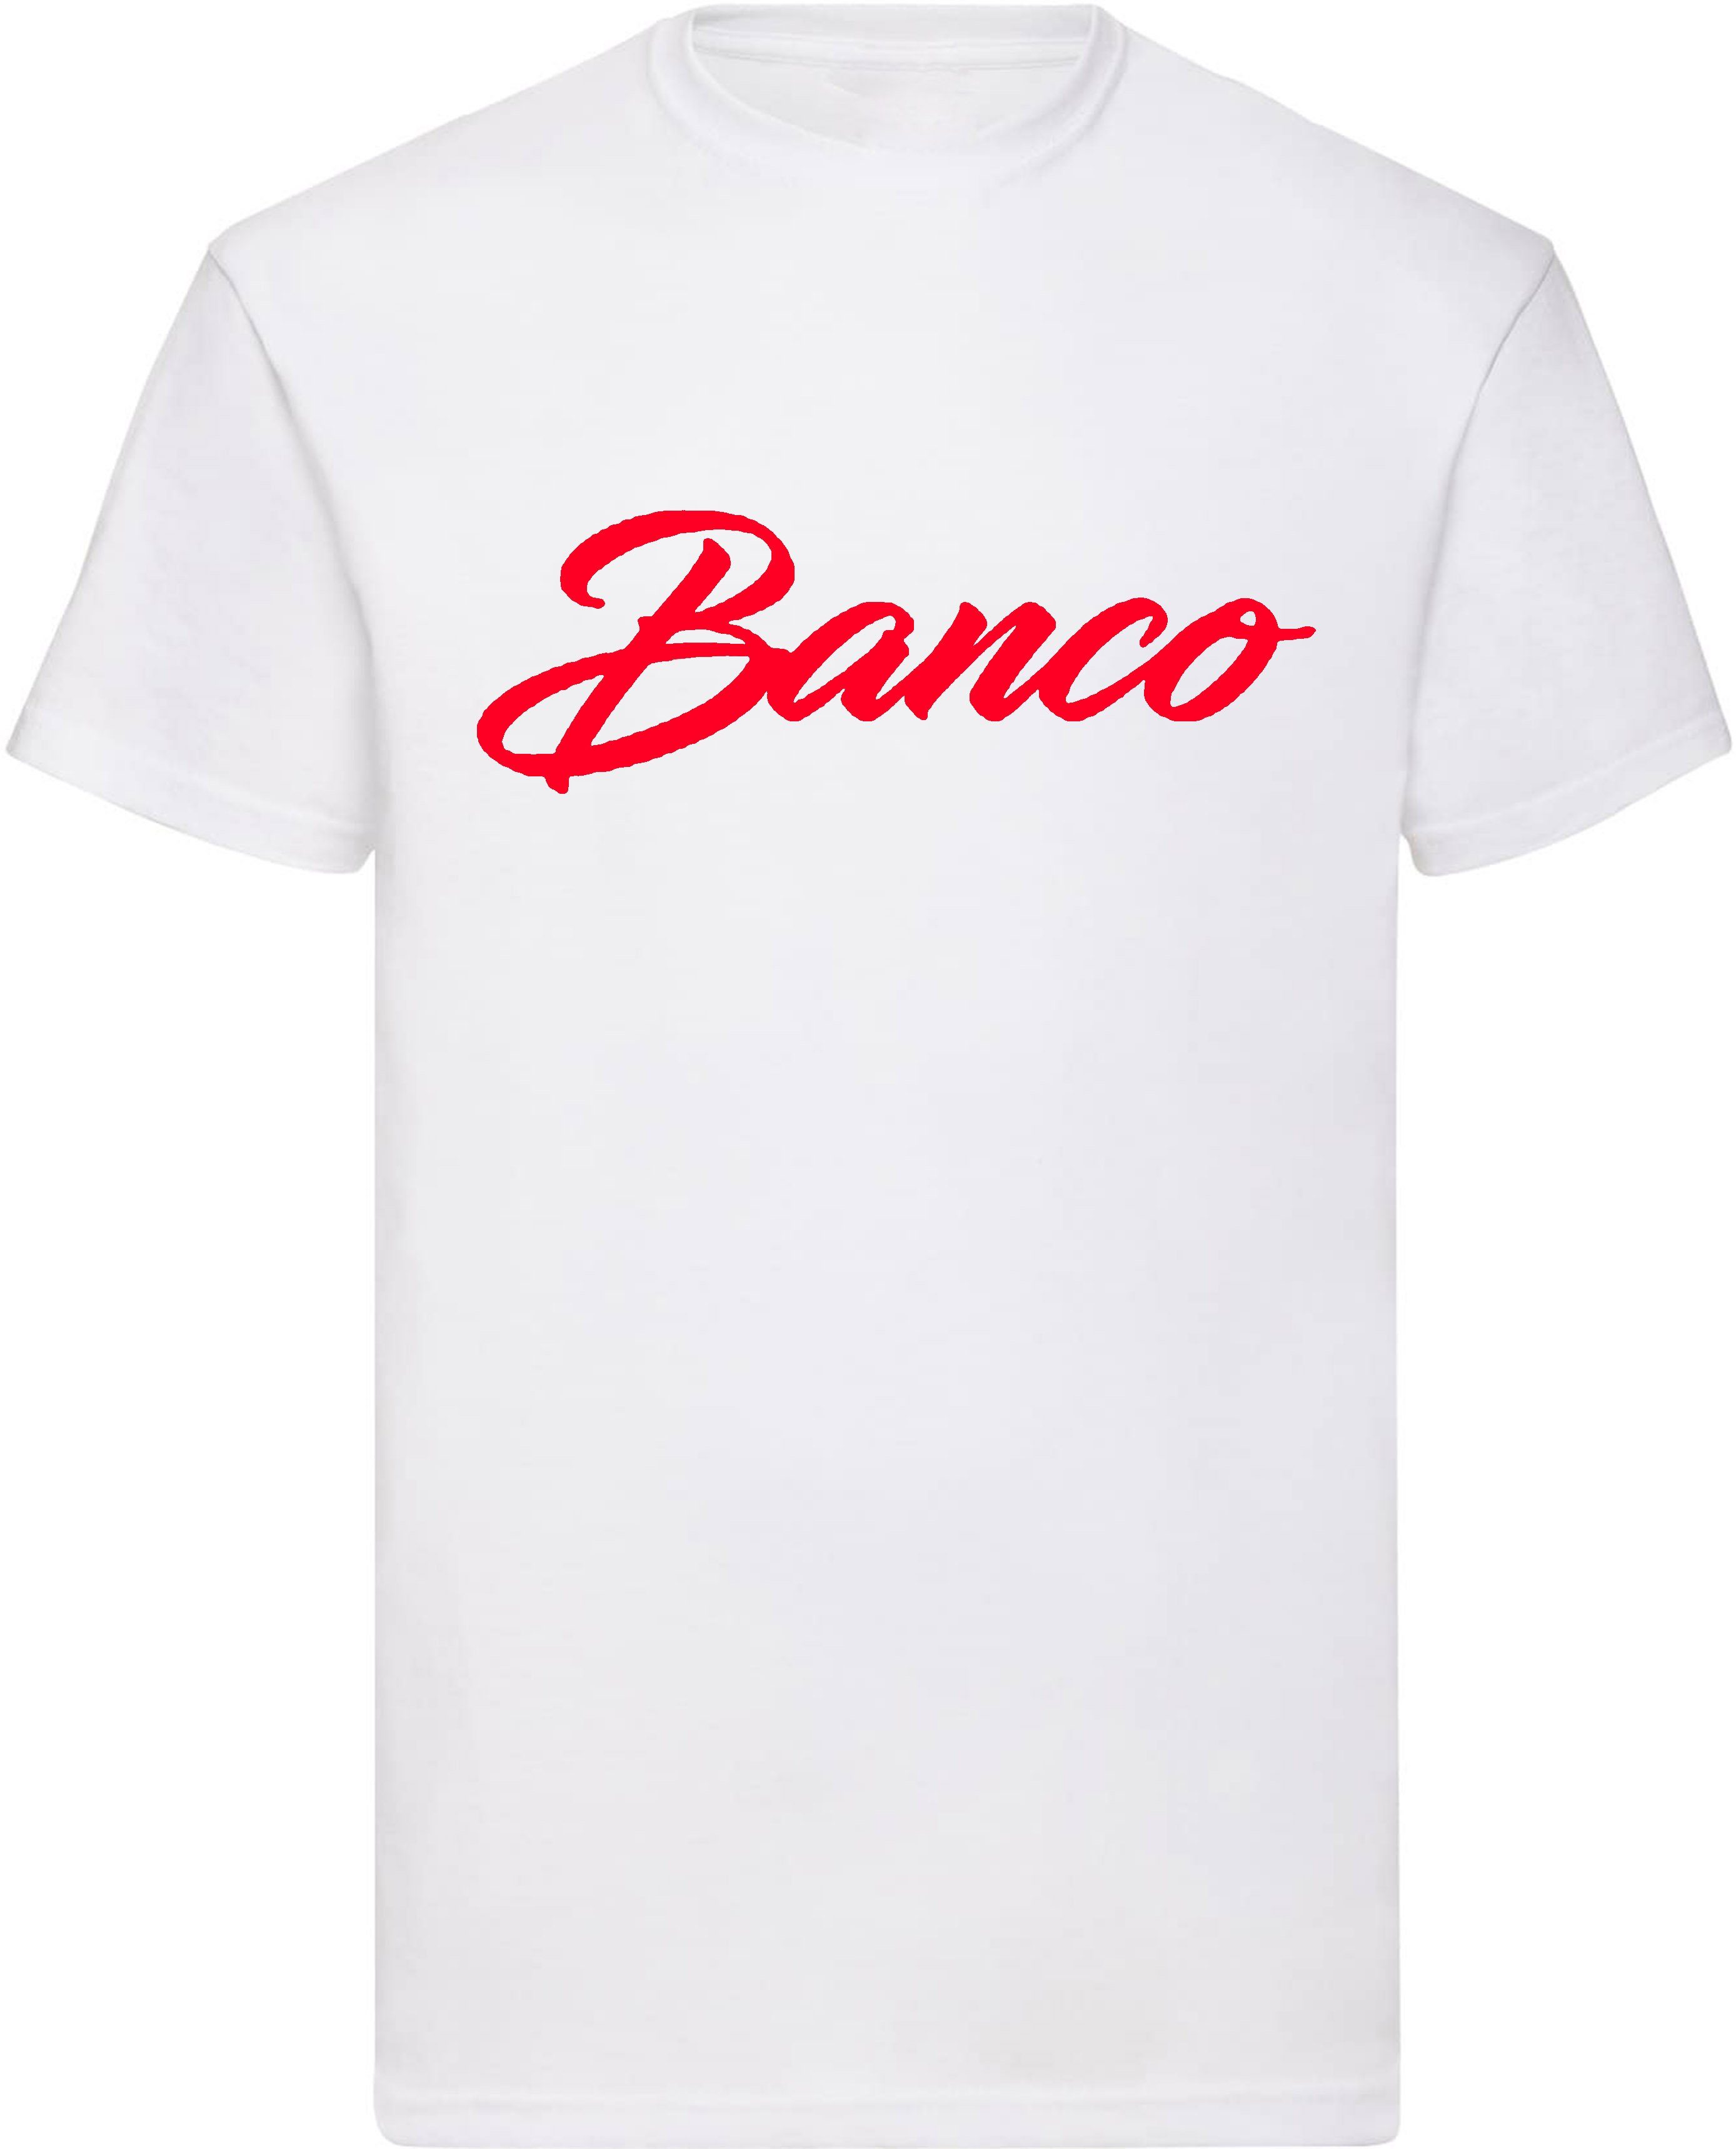 Freizeit Kurzarm Rundhals Sport Shirt Sommer 100% T-Shirt Streetwear Baumwolle WeißRot Banco